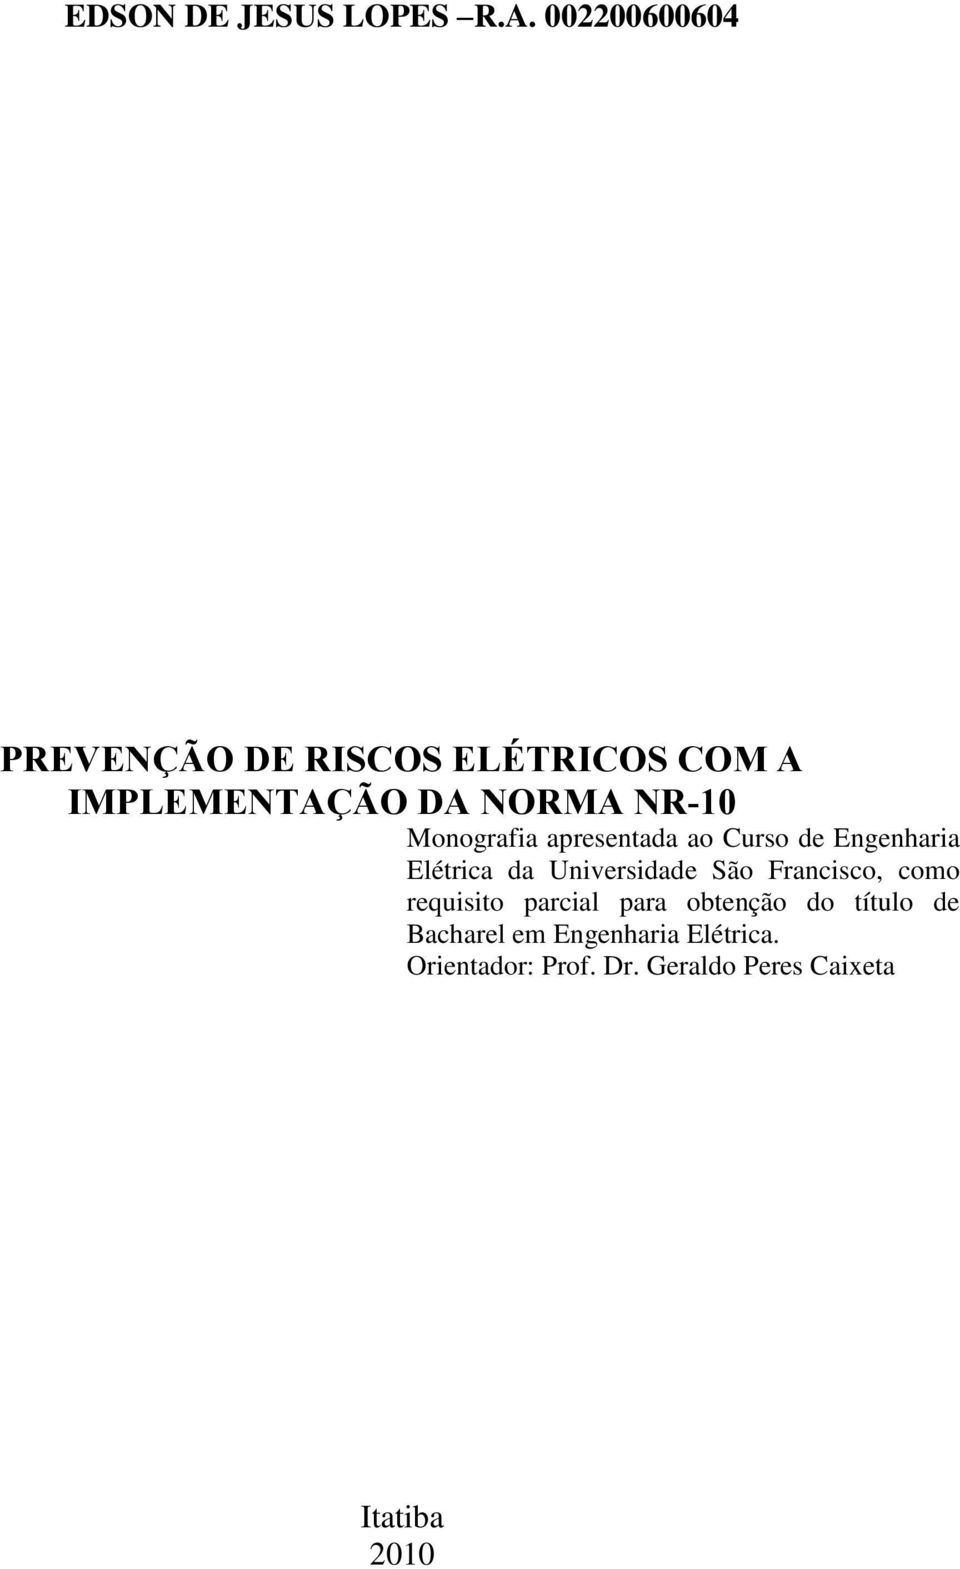 Monografia apresentada ao Curso de Engenharia Elétrica da Universidade São